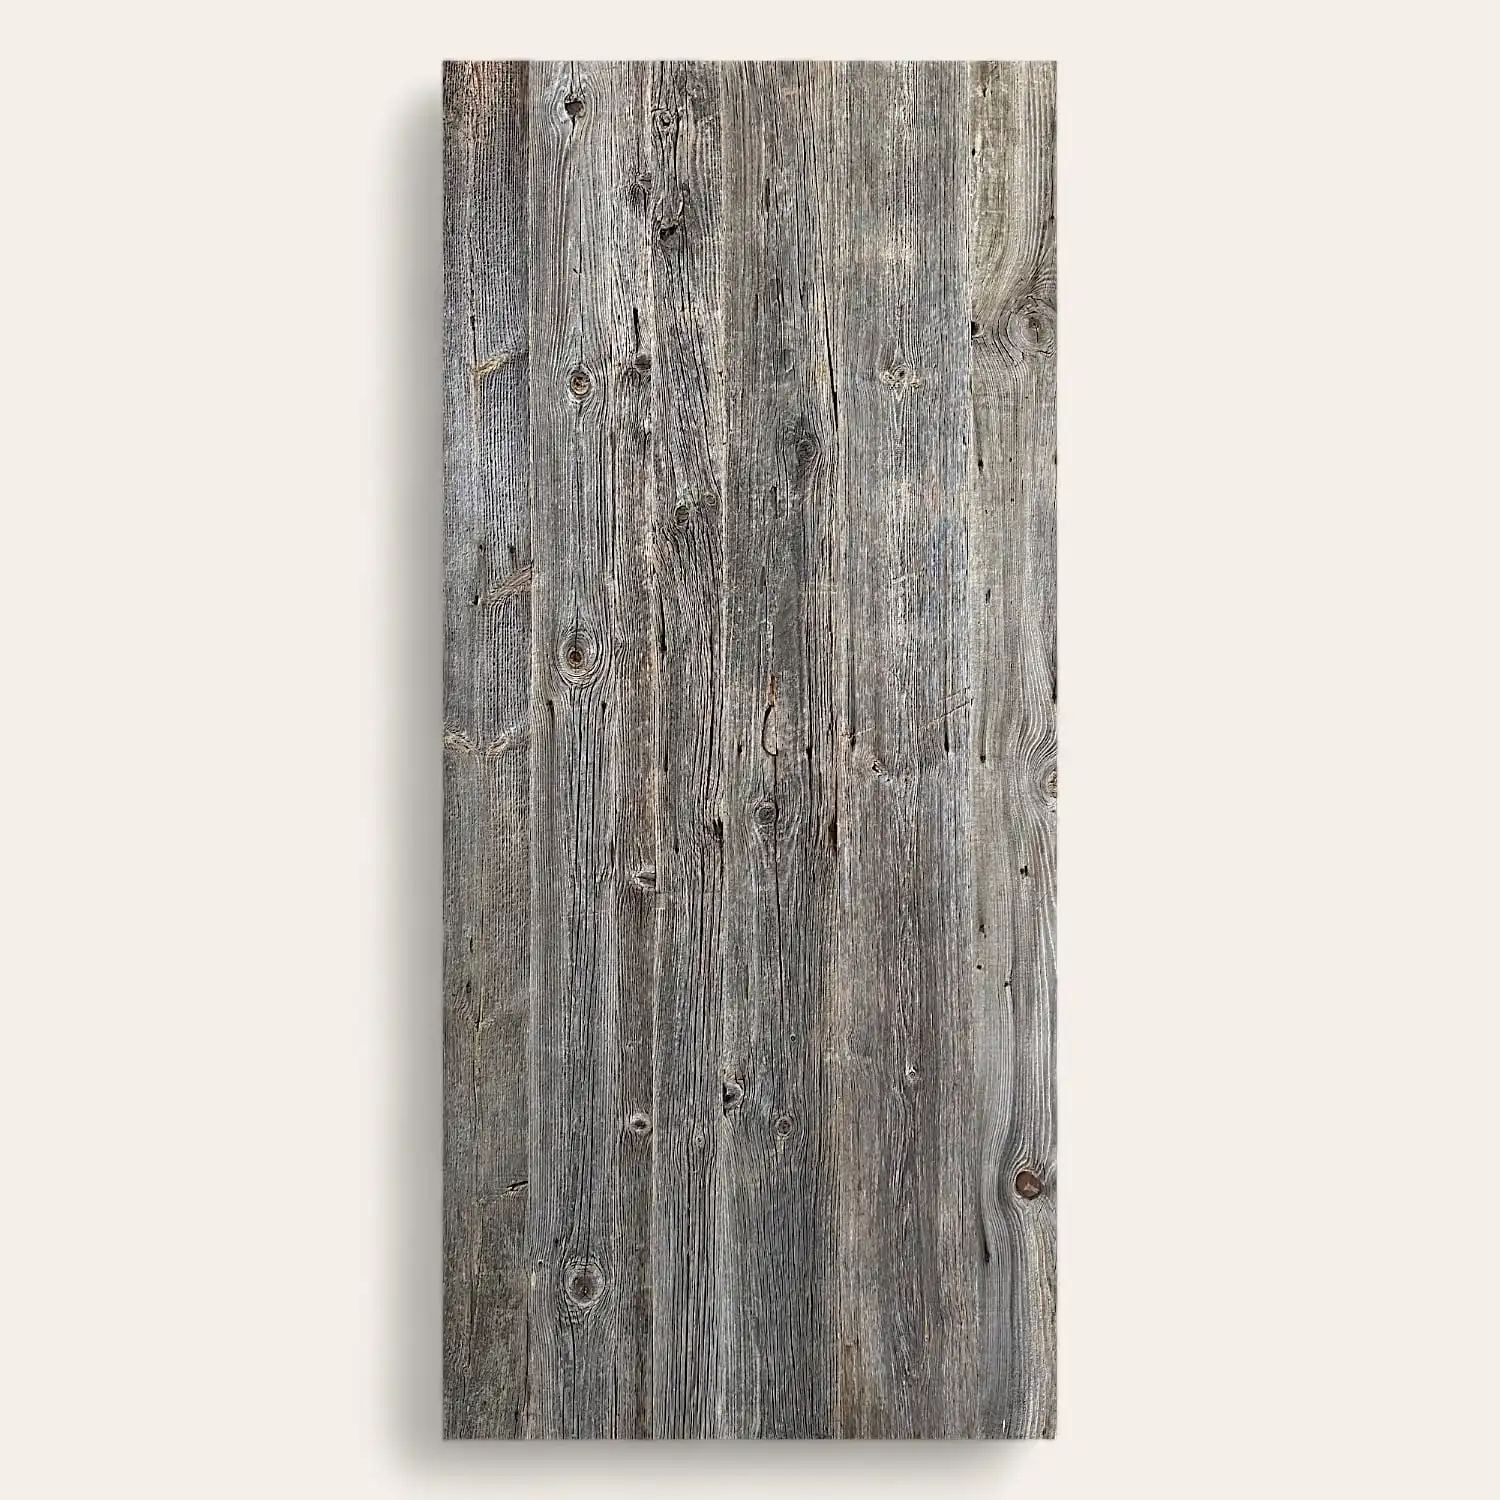  Image verticale d'un panneau 3 plis bois vieux, mettant en valeur des nœuds et des lignes naturelles avec des textures patinées et un grain visible. 